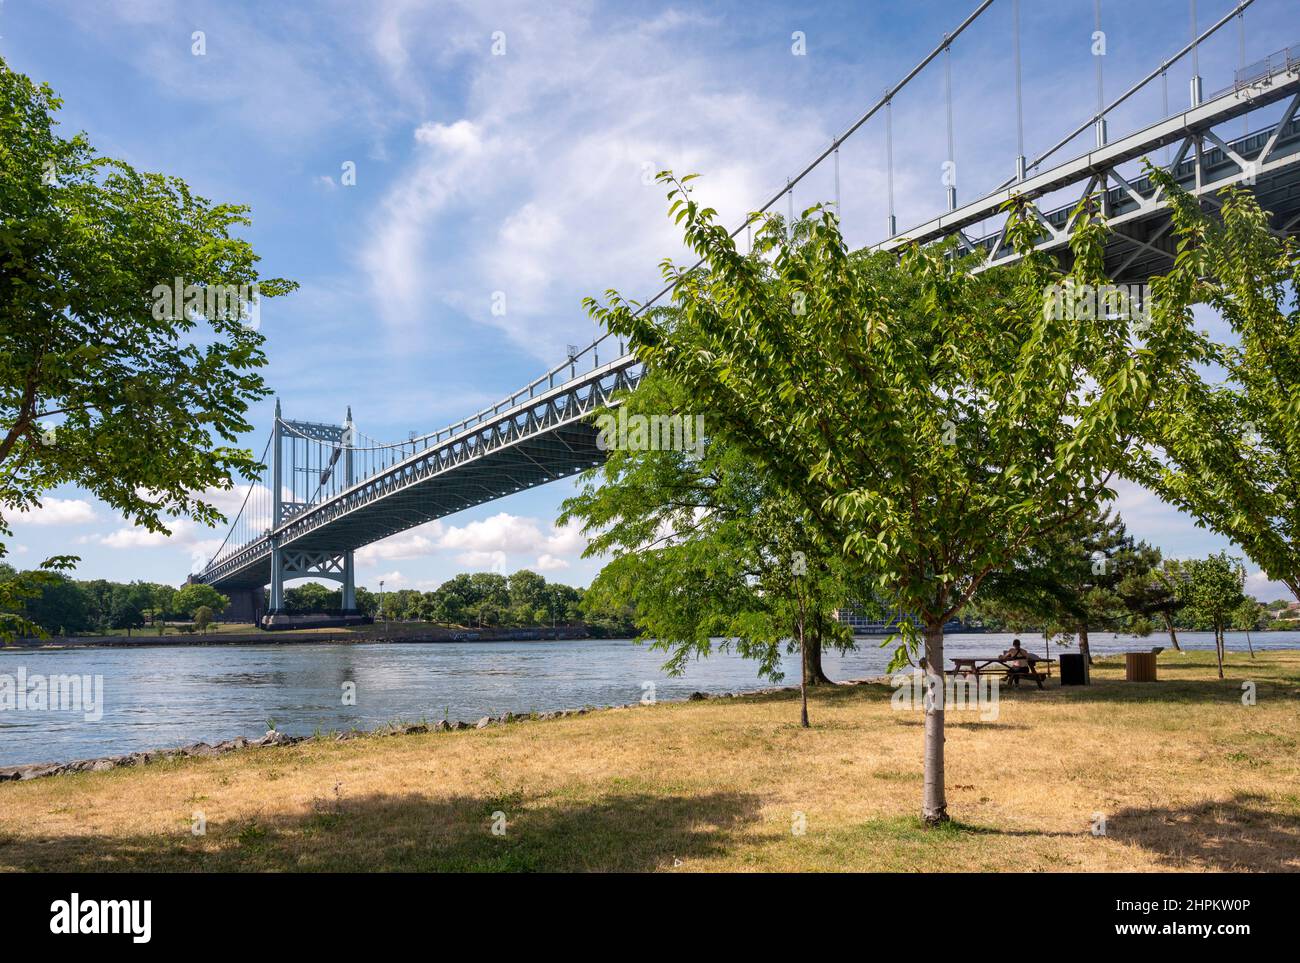 El puente Robert F. Kennedy, antes y aún comúnmente conocido como el puente Triborough, enlaza los distritos de Manhattan, Queens y el Bronx Foto de stock